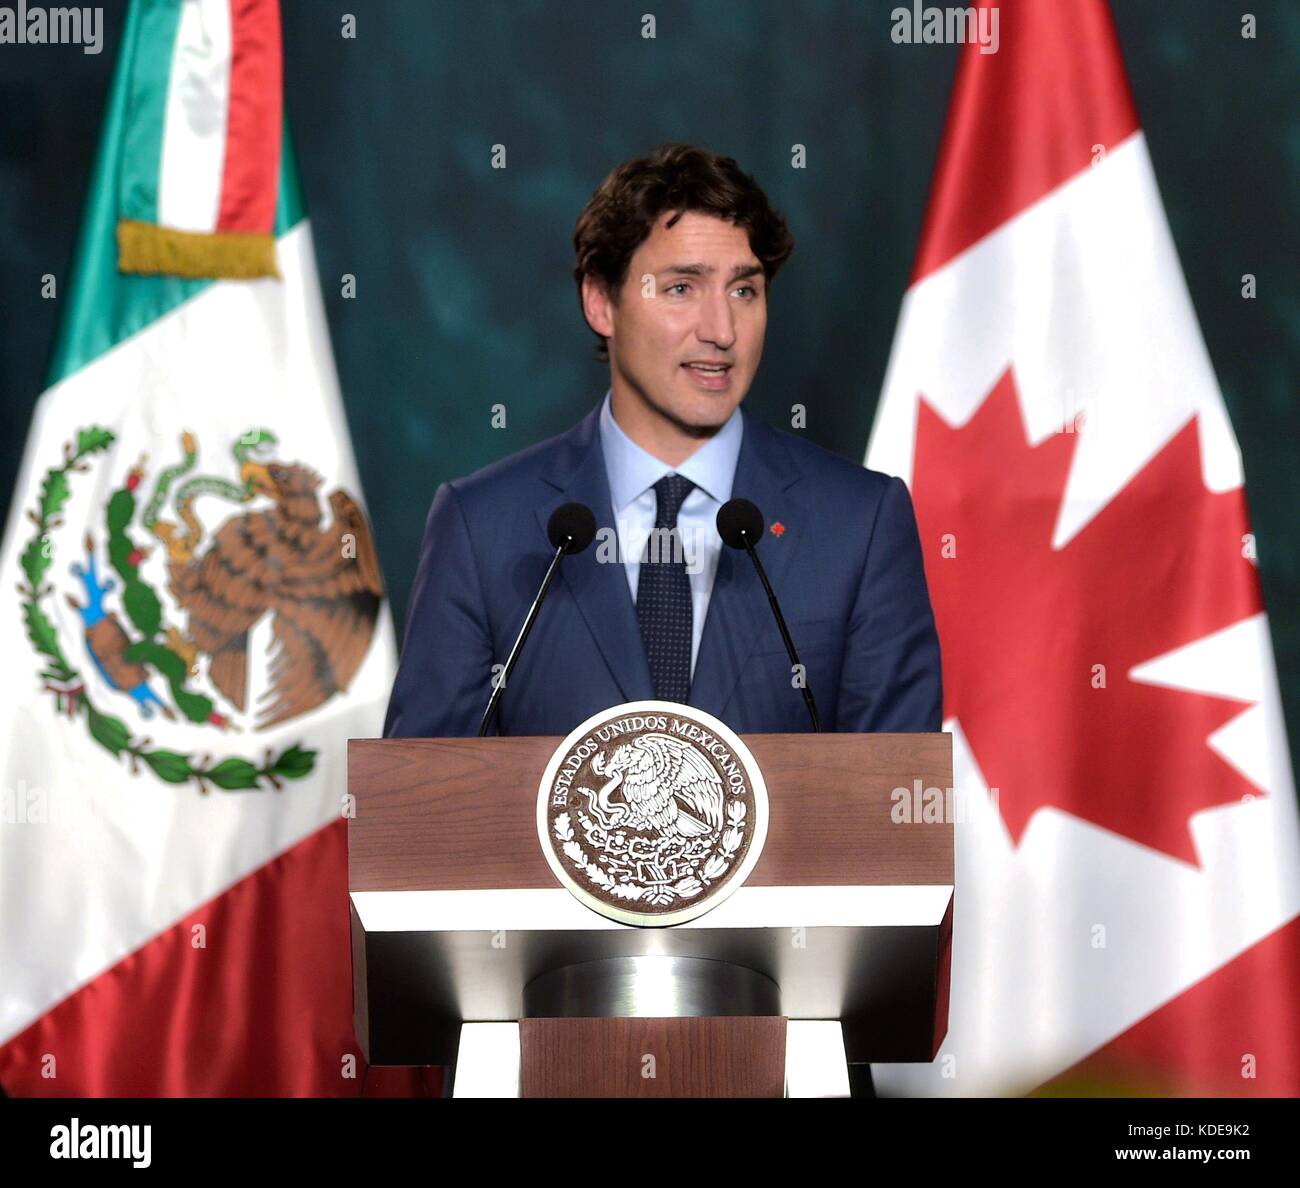 Le premier ministre du Canada, Justin Trudeau lors d'une conférence de presse conjointe avec le président mexicain Enrique pena nieto à la suite des réunions bilatérales dans le palacio nacional, 12 octobre 2017 à Mexico, Mexique. Presidenciamx planetpix (via) Banque D'Images